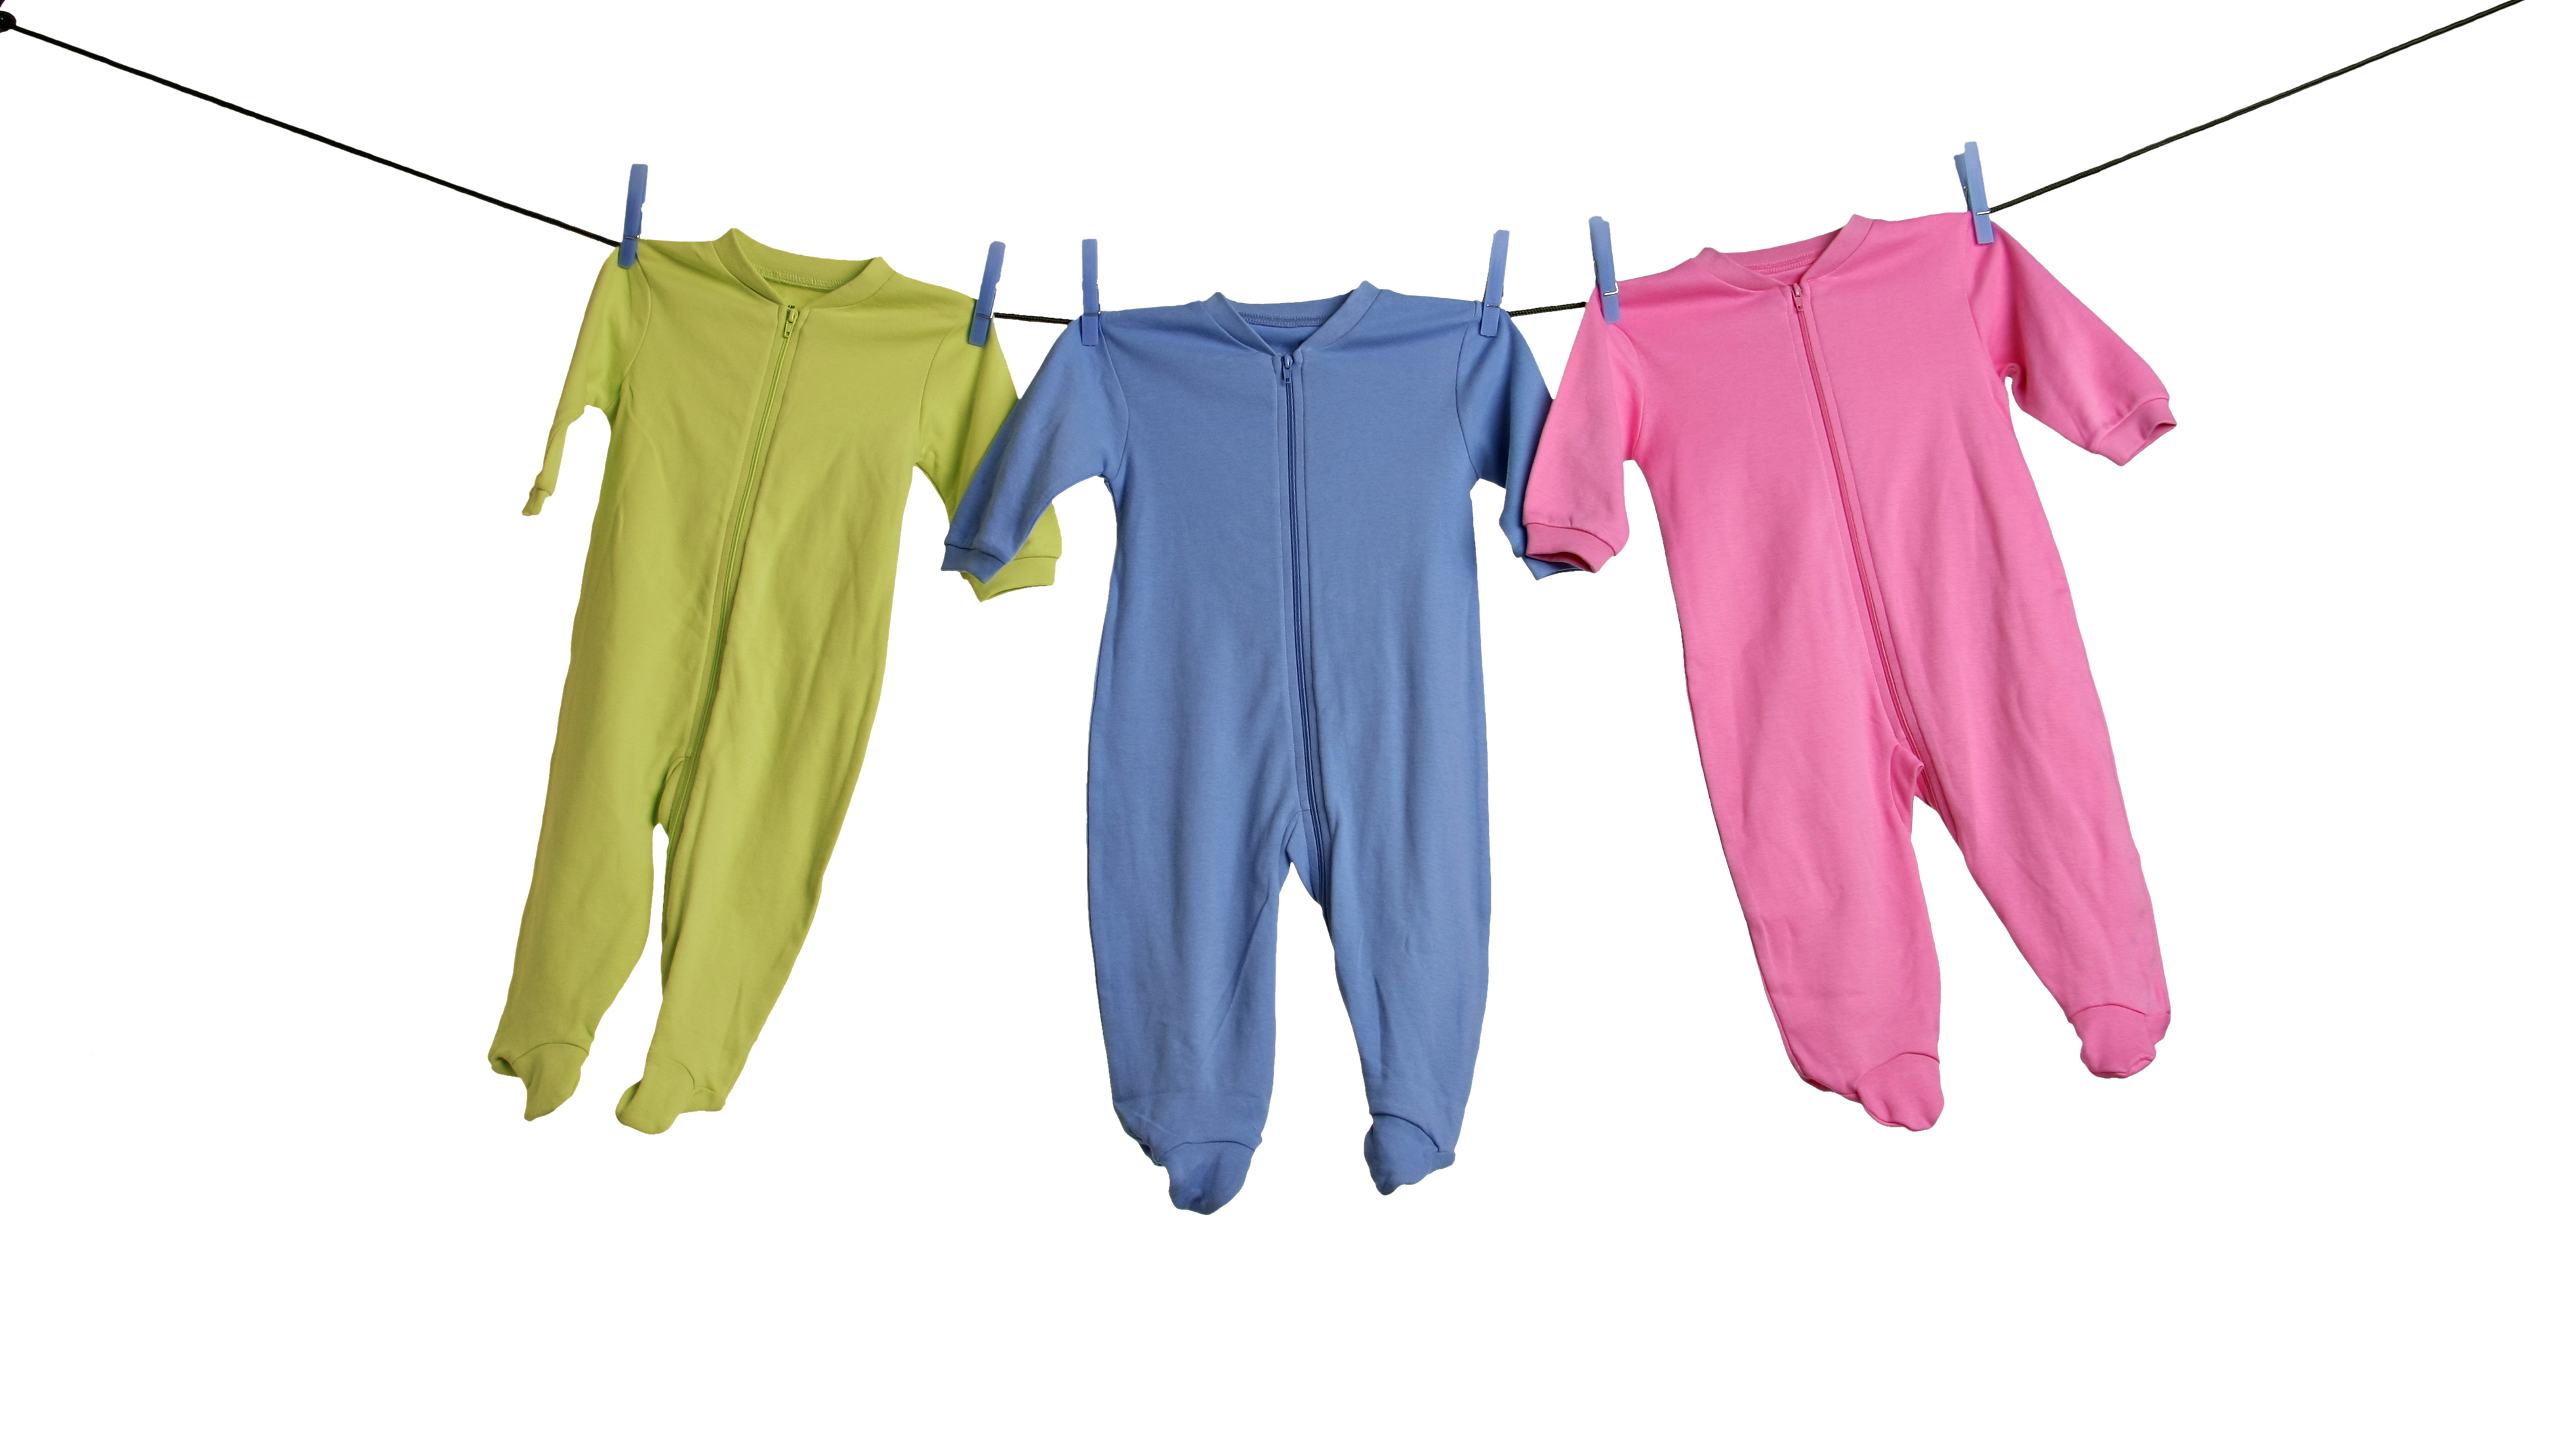 Αποτέλεσμα εικόνας για babies clothes